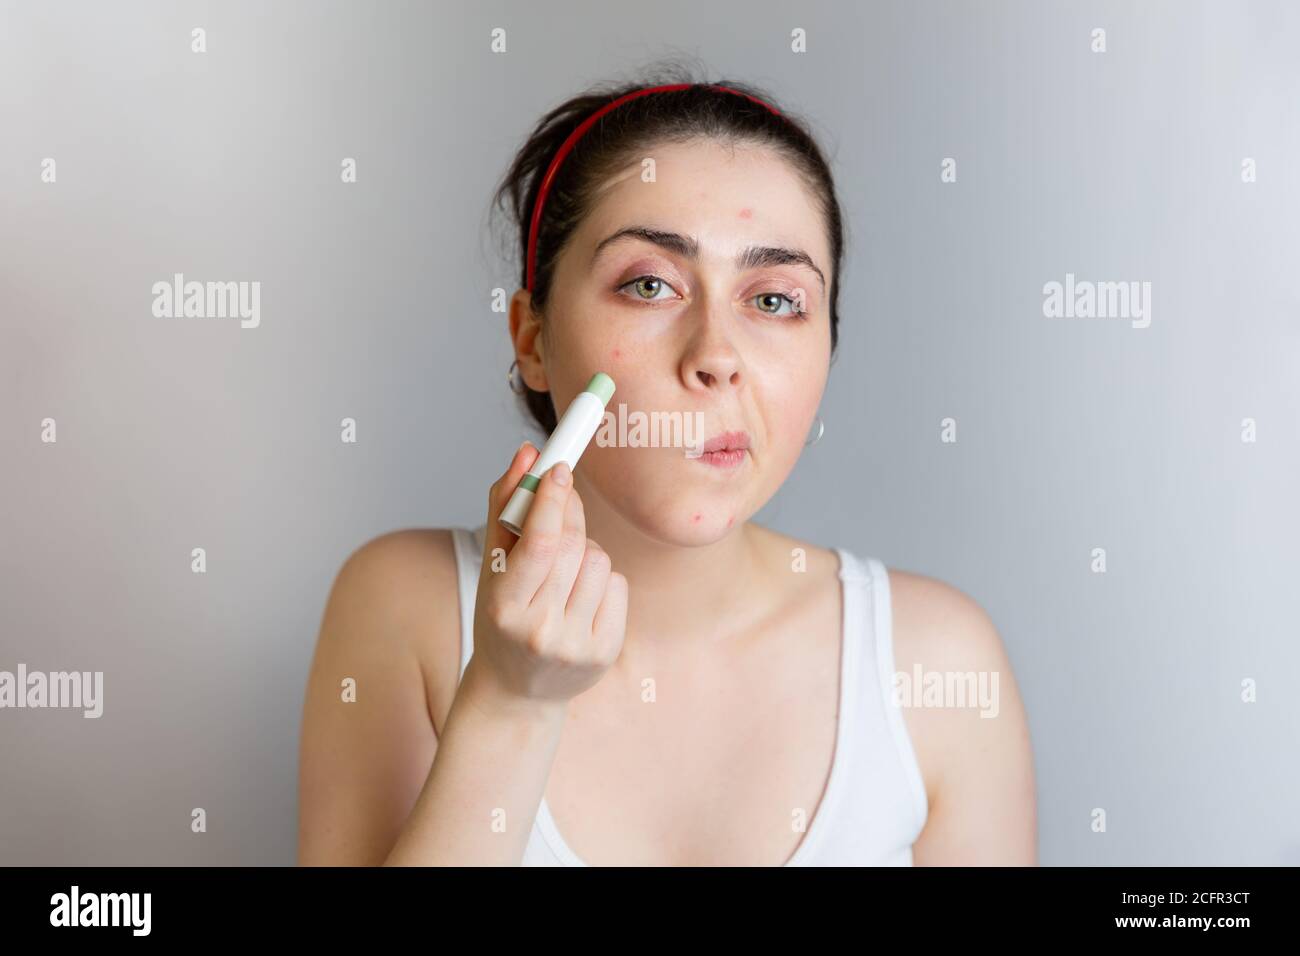 Ein niedliches Teenager-Mädchen verwendet einen Concealer Bleistift, um  einen Pickel auf ihrer Wange zu verdecken. Das Konzept der Kosmetologie und  Akne-Kontrolle, Adoleszenz. Speicherplatz kopieren Stockfotografie - Alamy